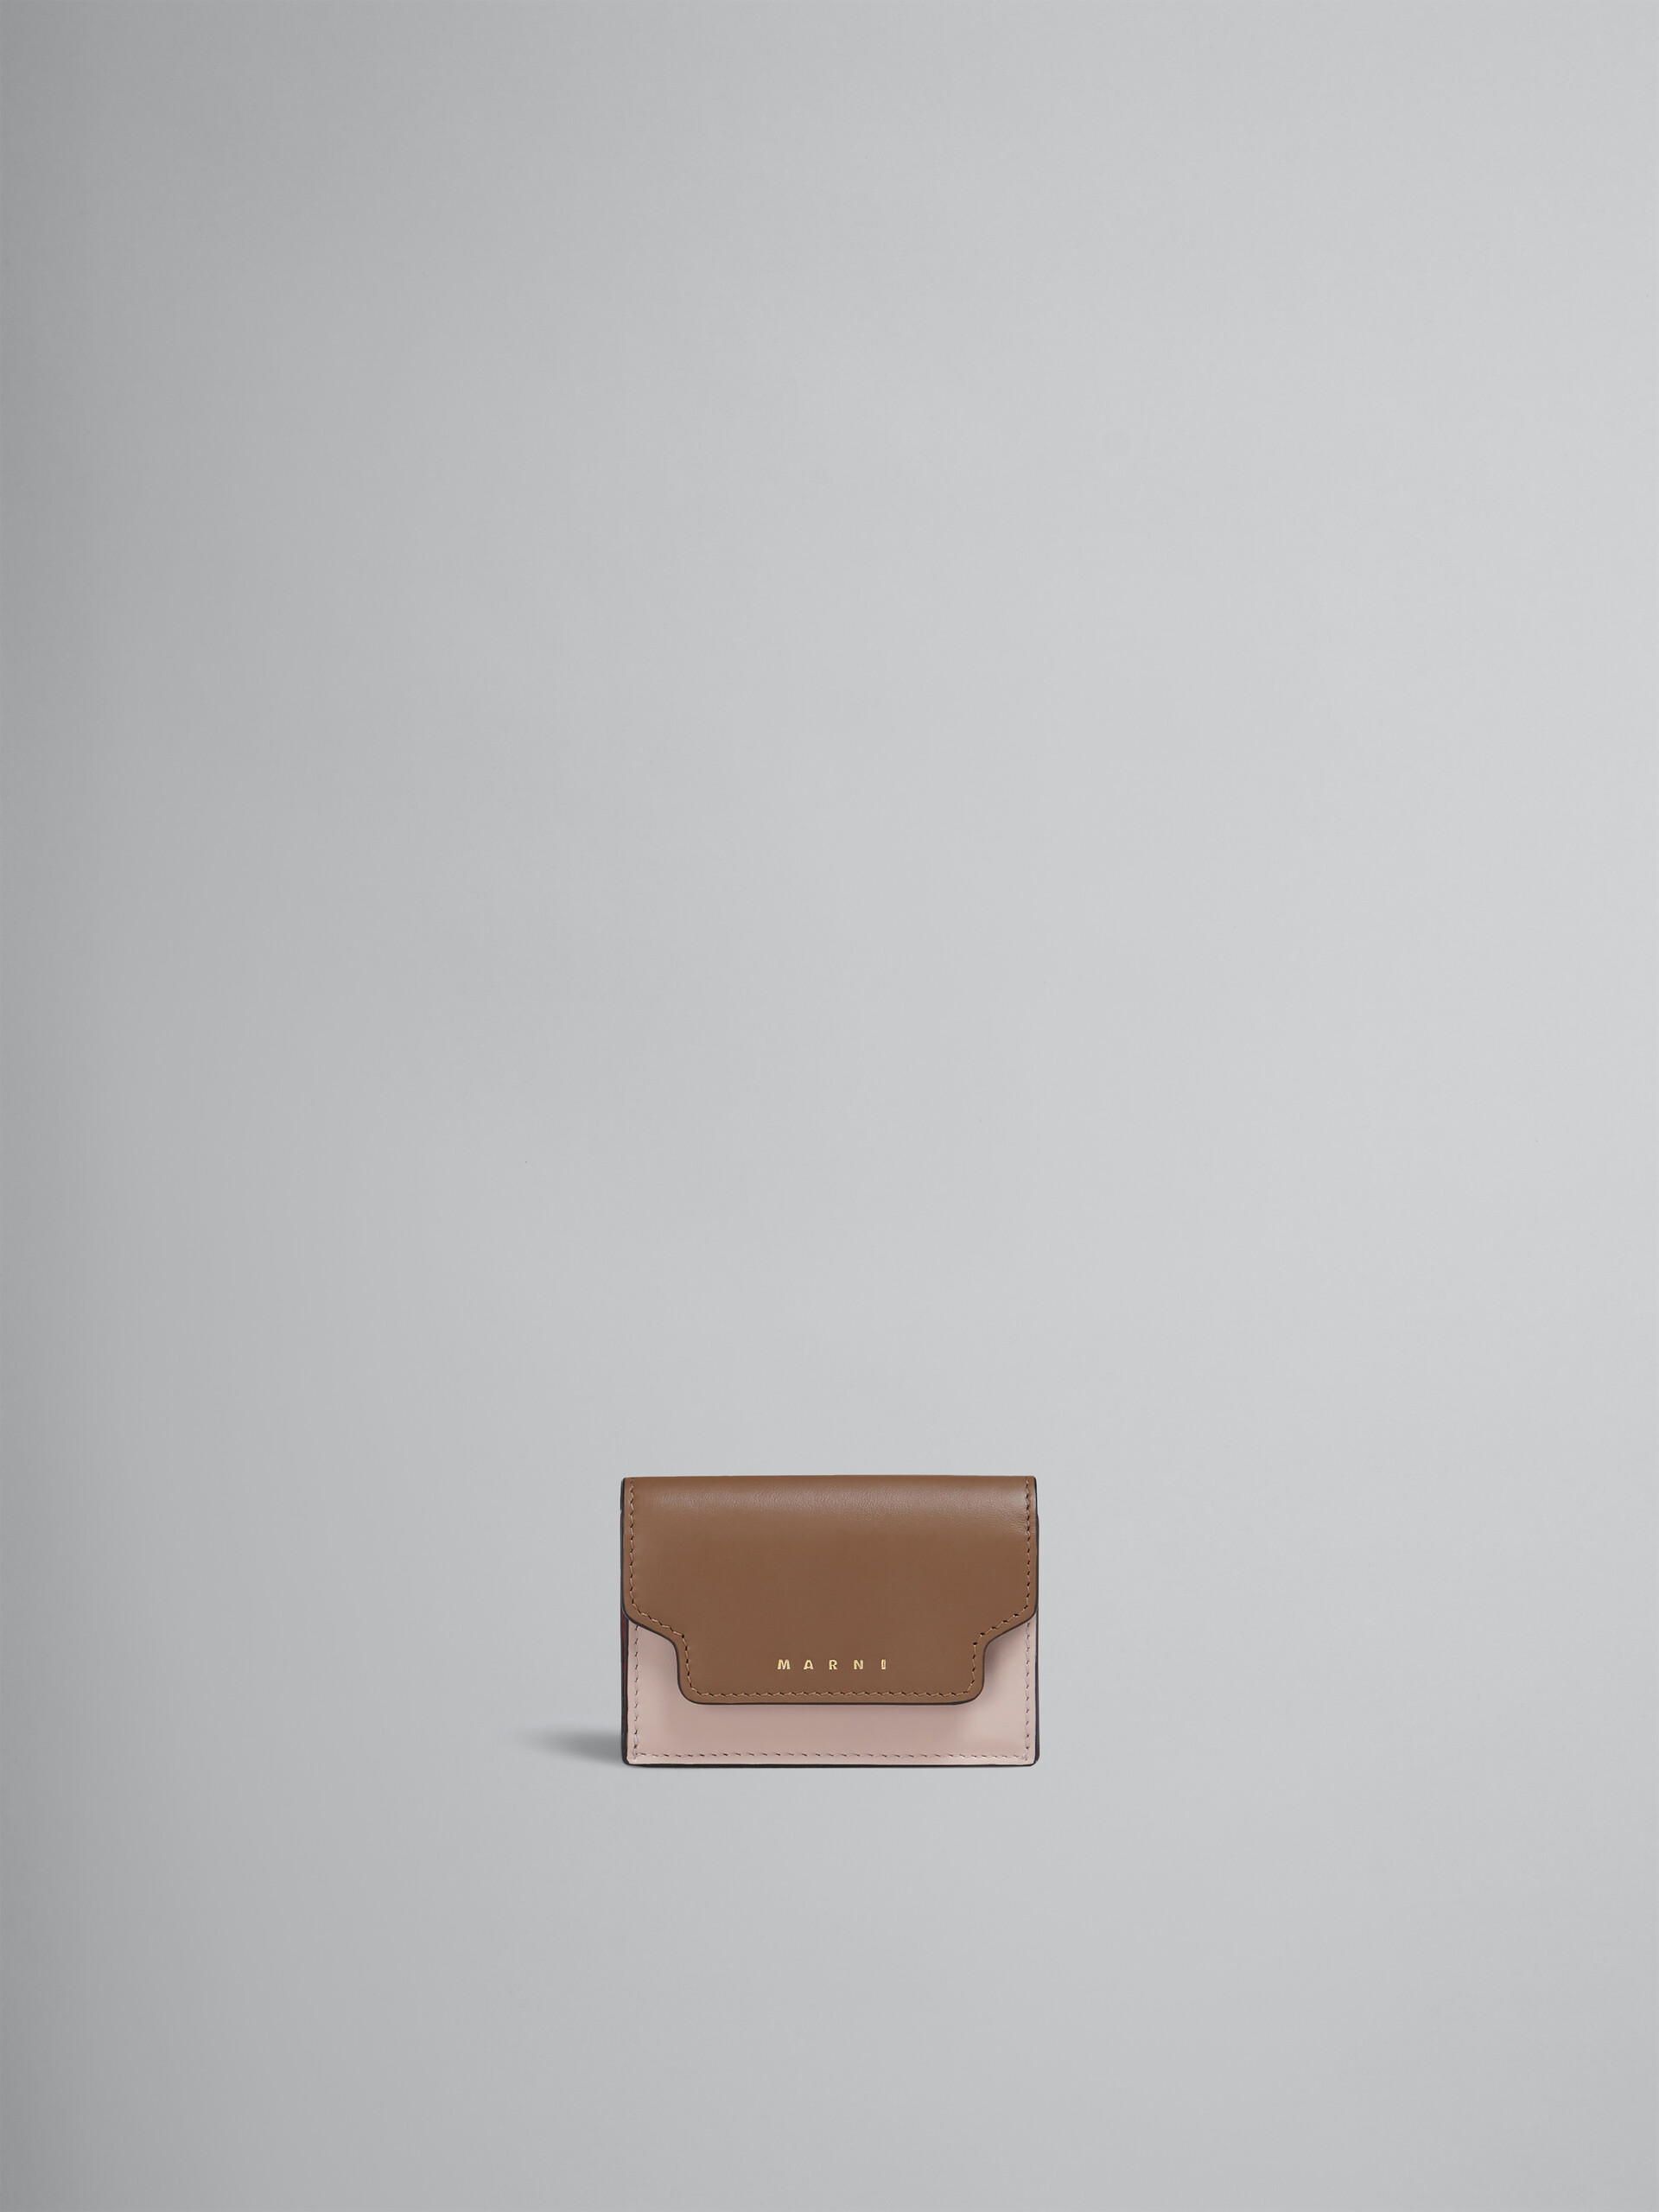 Portafoglio tri-fold in pelle marrone rosa e bordeaux - Portafogli - Image 1